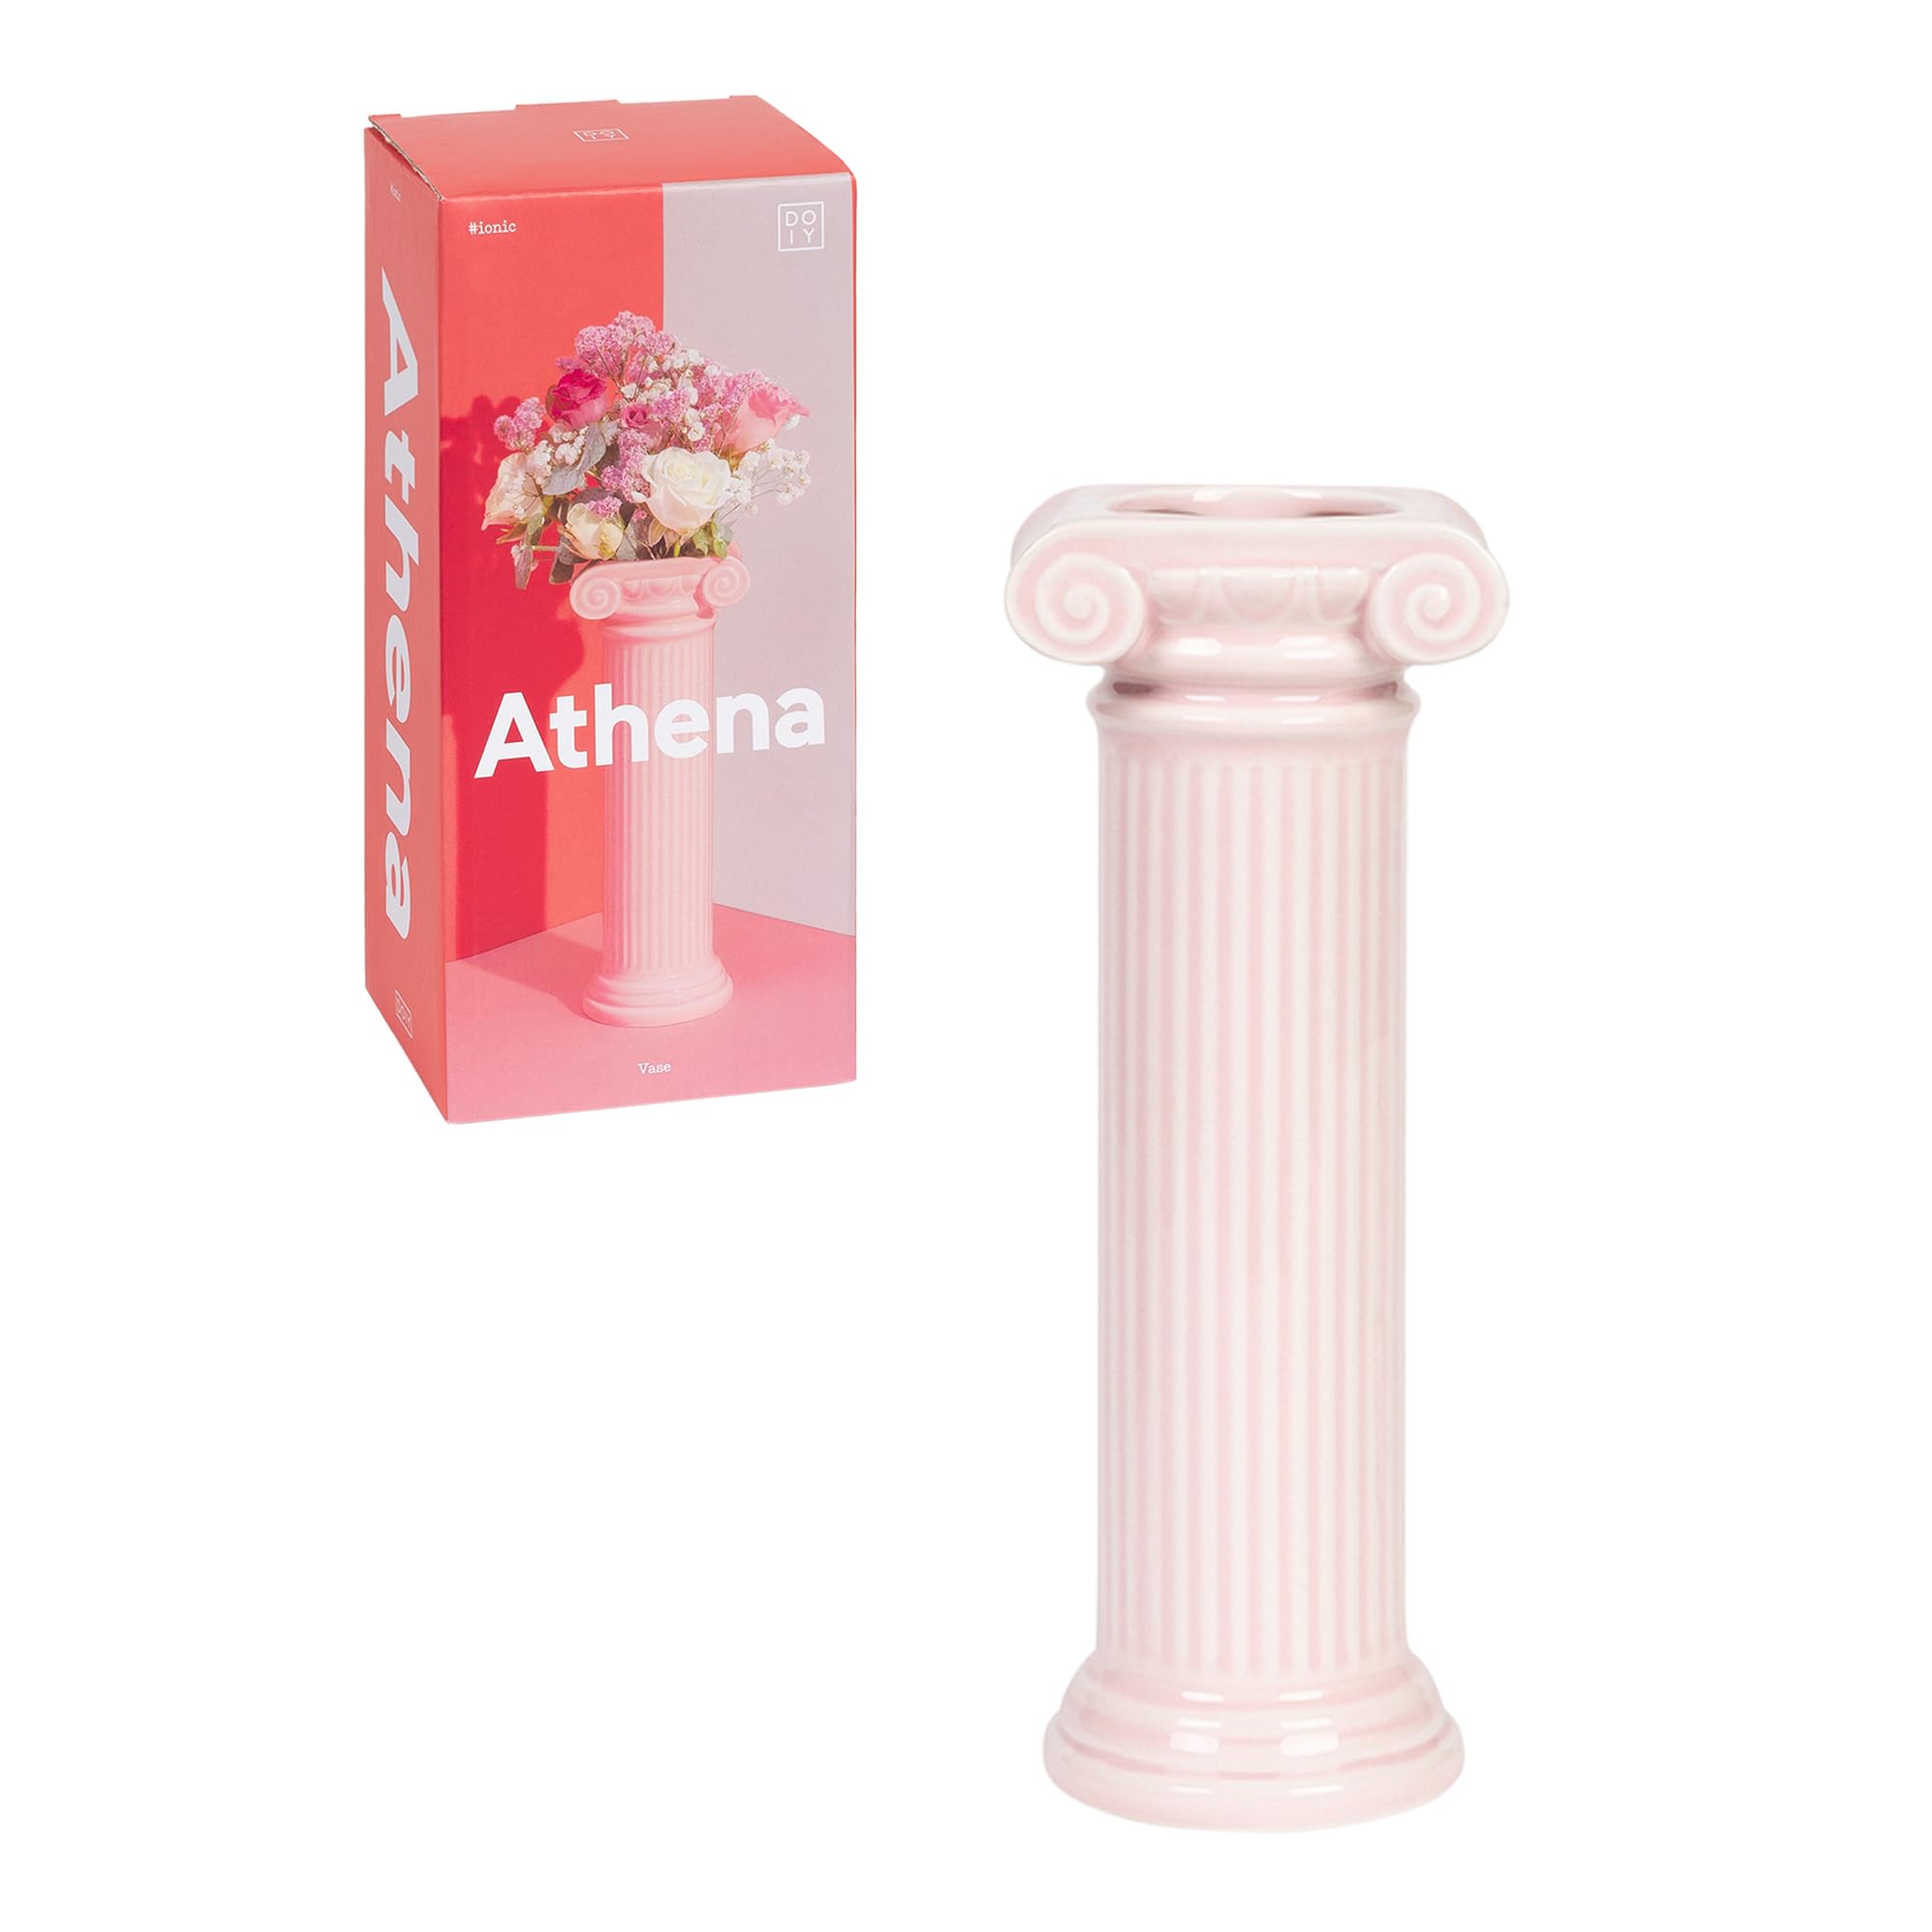 DOIY - Modernes dekoratives Vasen - Athena-Design in Form Einer ionischen Säule - Hergestellt aus Keramik - Blumenvase - Dekorativer Blumenhalter - Rosa Farbe - 9,2x8x25 cm